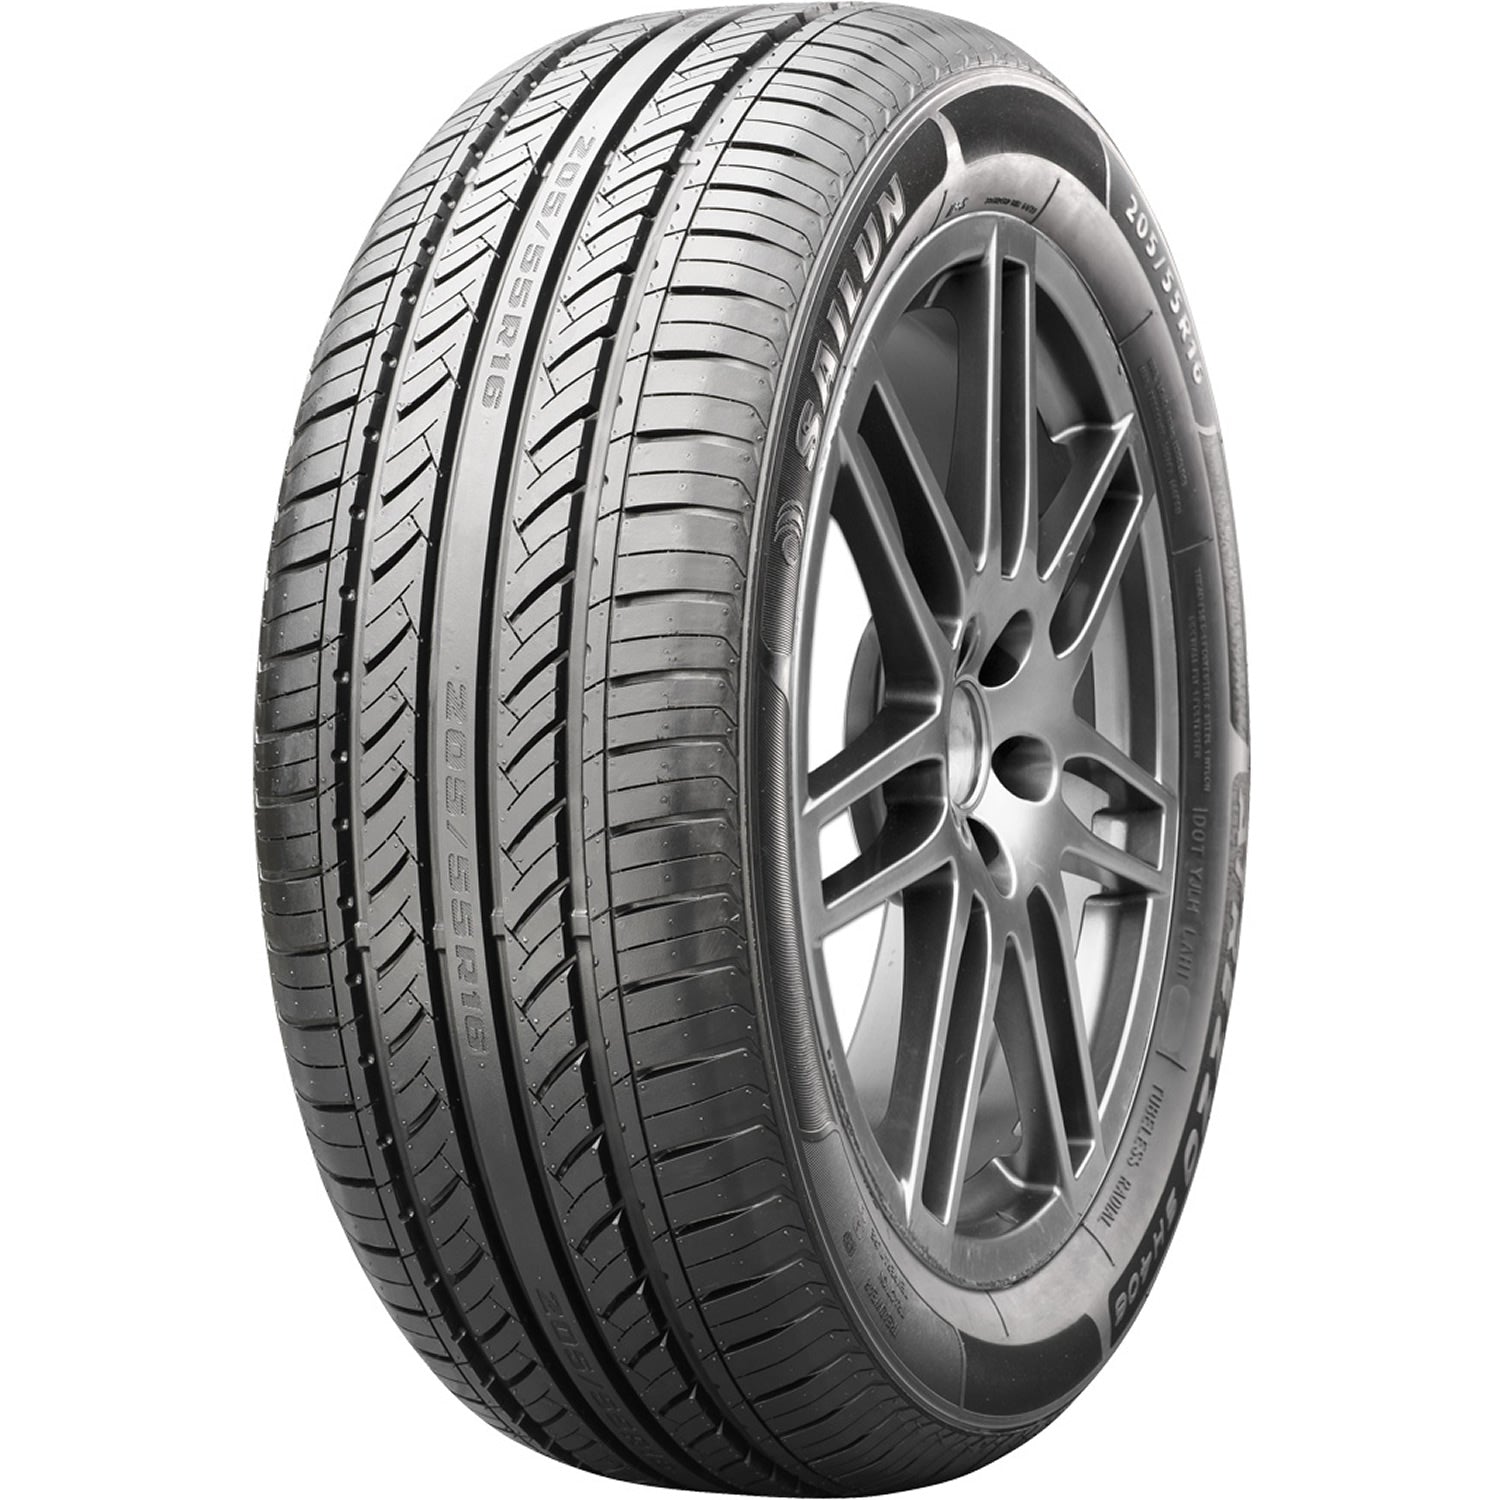 SAILUN ATREZZO SH406 195/65R15 (25X7.9R 15) Tires